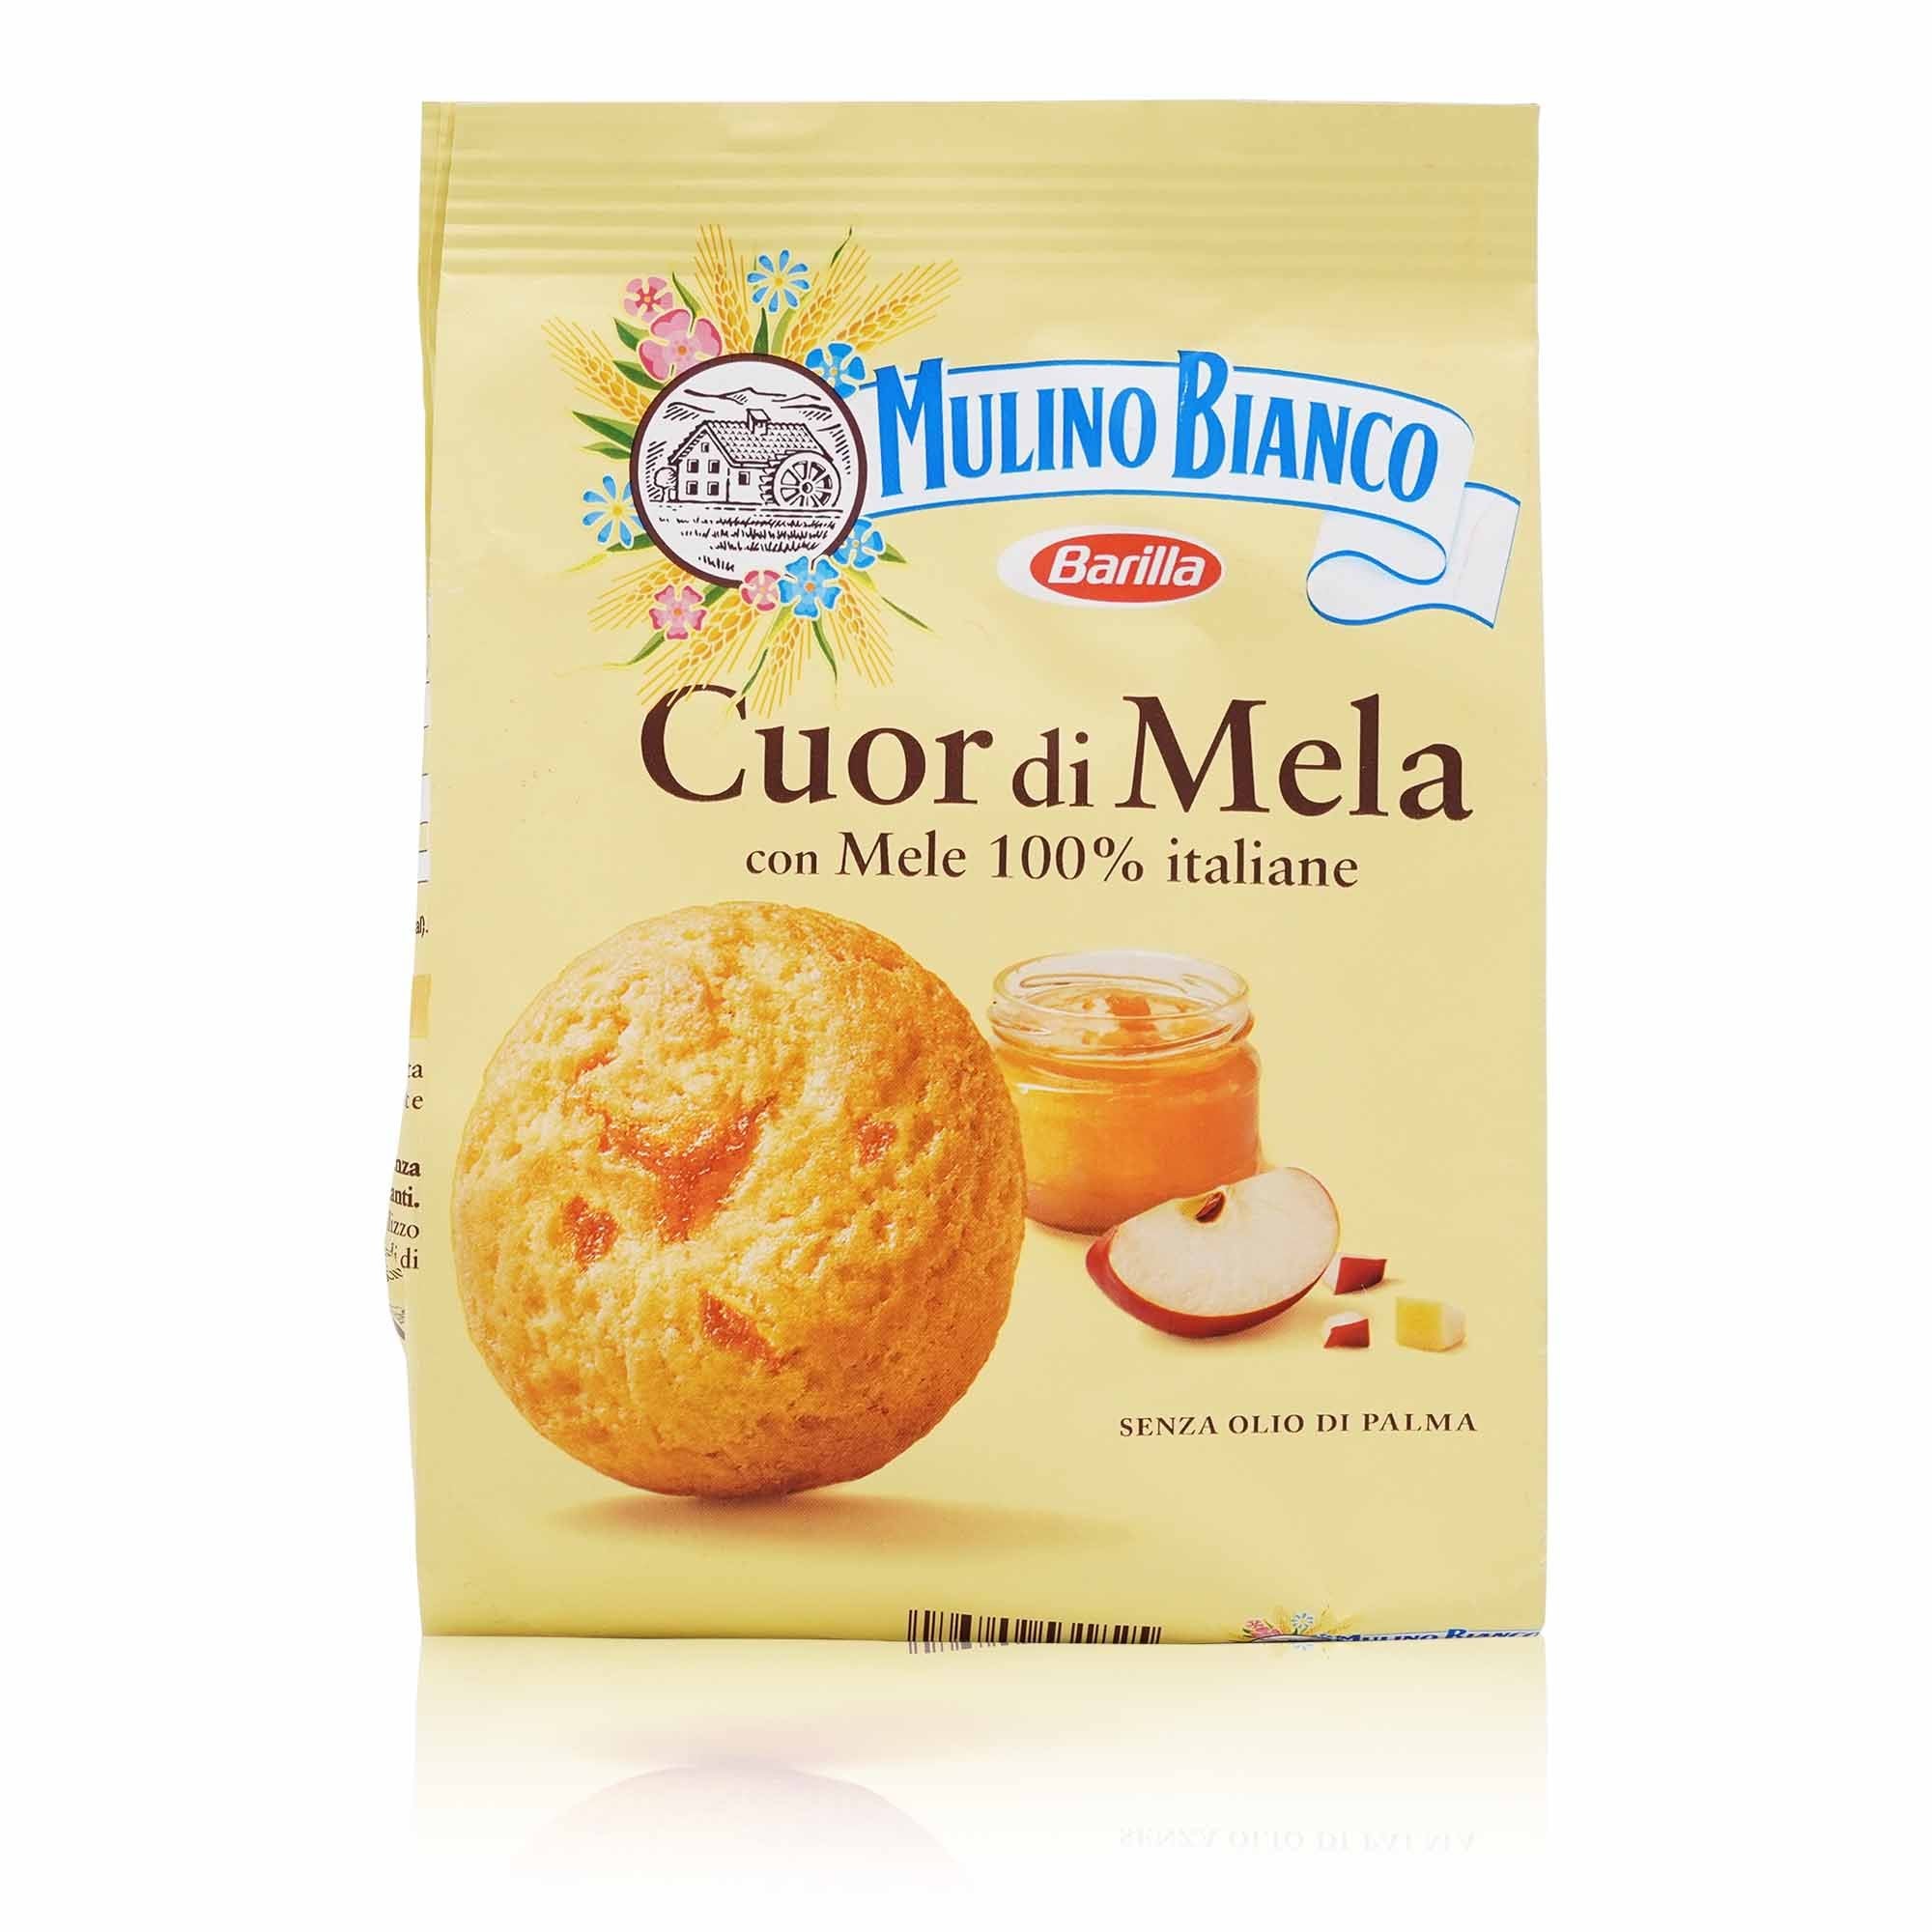 MULINO BIANCO Biscotti Cuor di Mela – Kekse mit Apfel Cuor di Mela - 0,300kg - italienisch-einkaufen.de